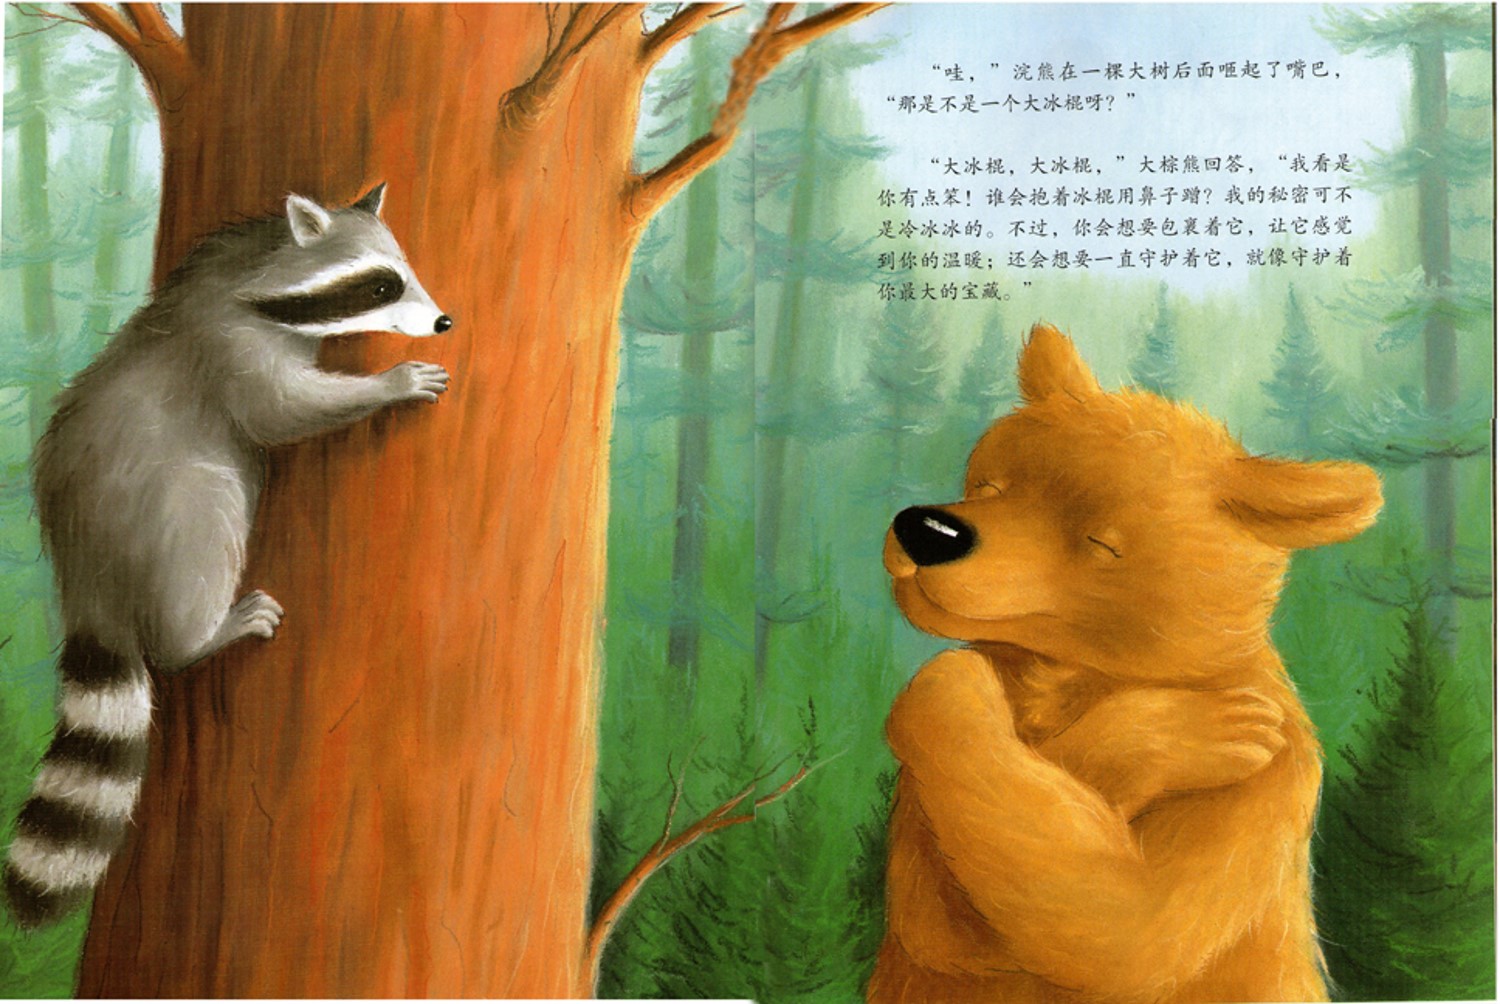 亲子绘本阅读第1本《大棕熊的秘密》